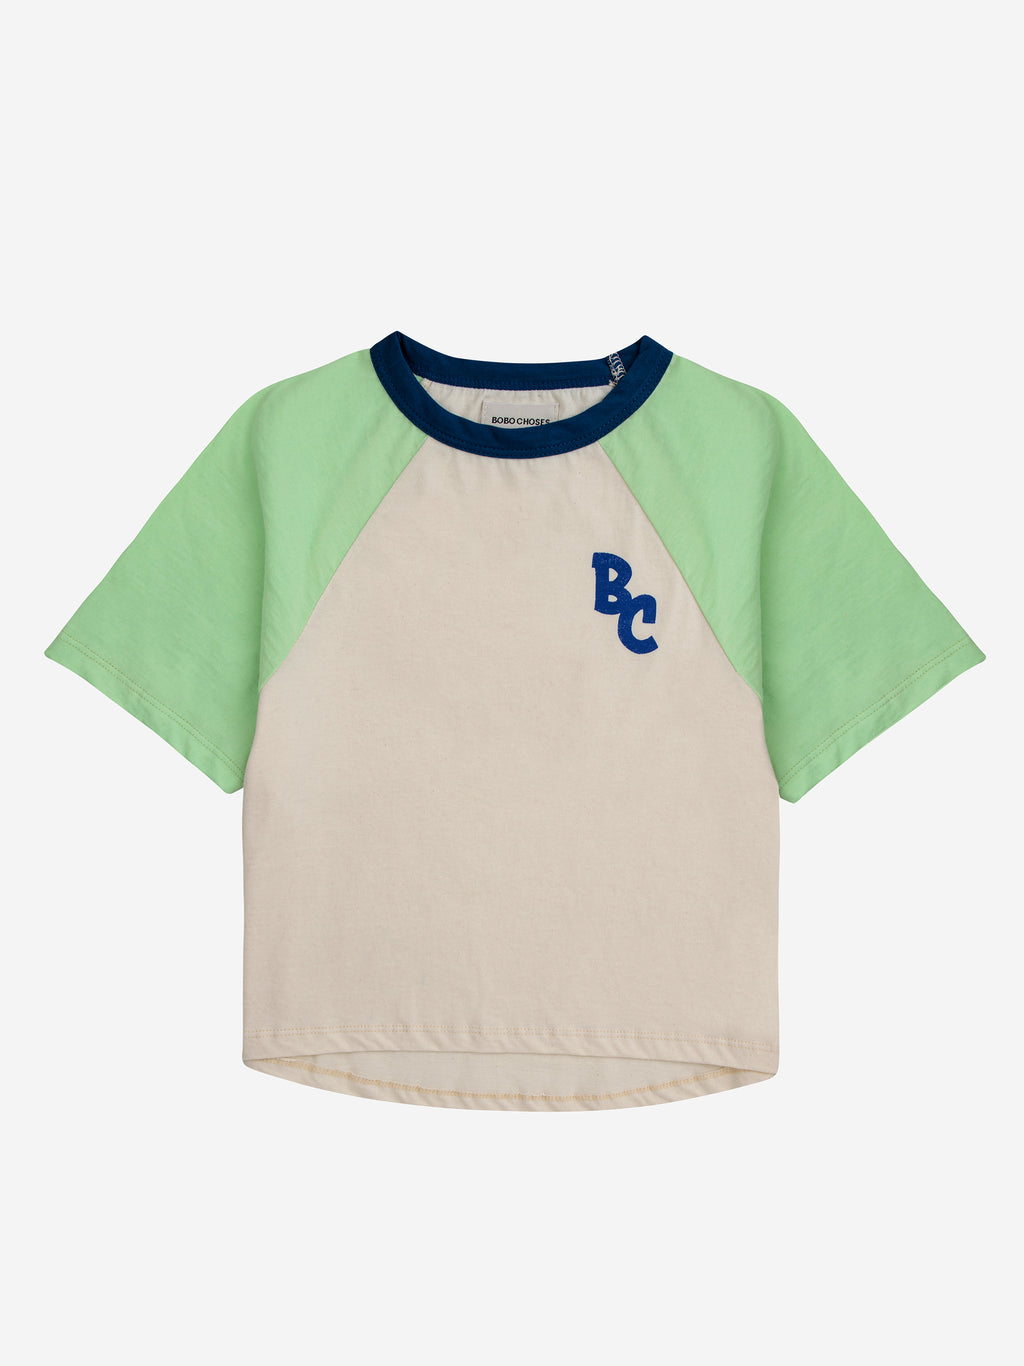 Bobo Choses BC Color Block Raglan Sleeves T-shirt - Jade Green